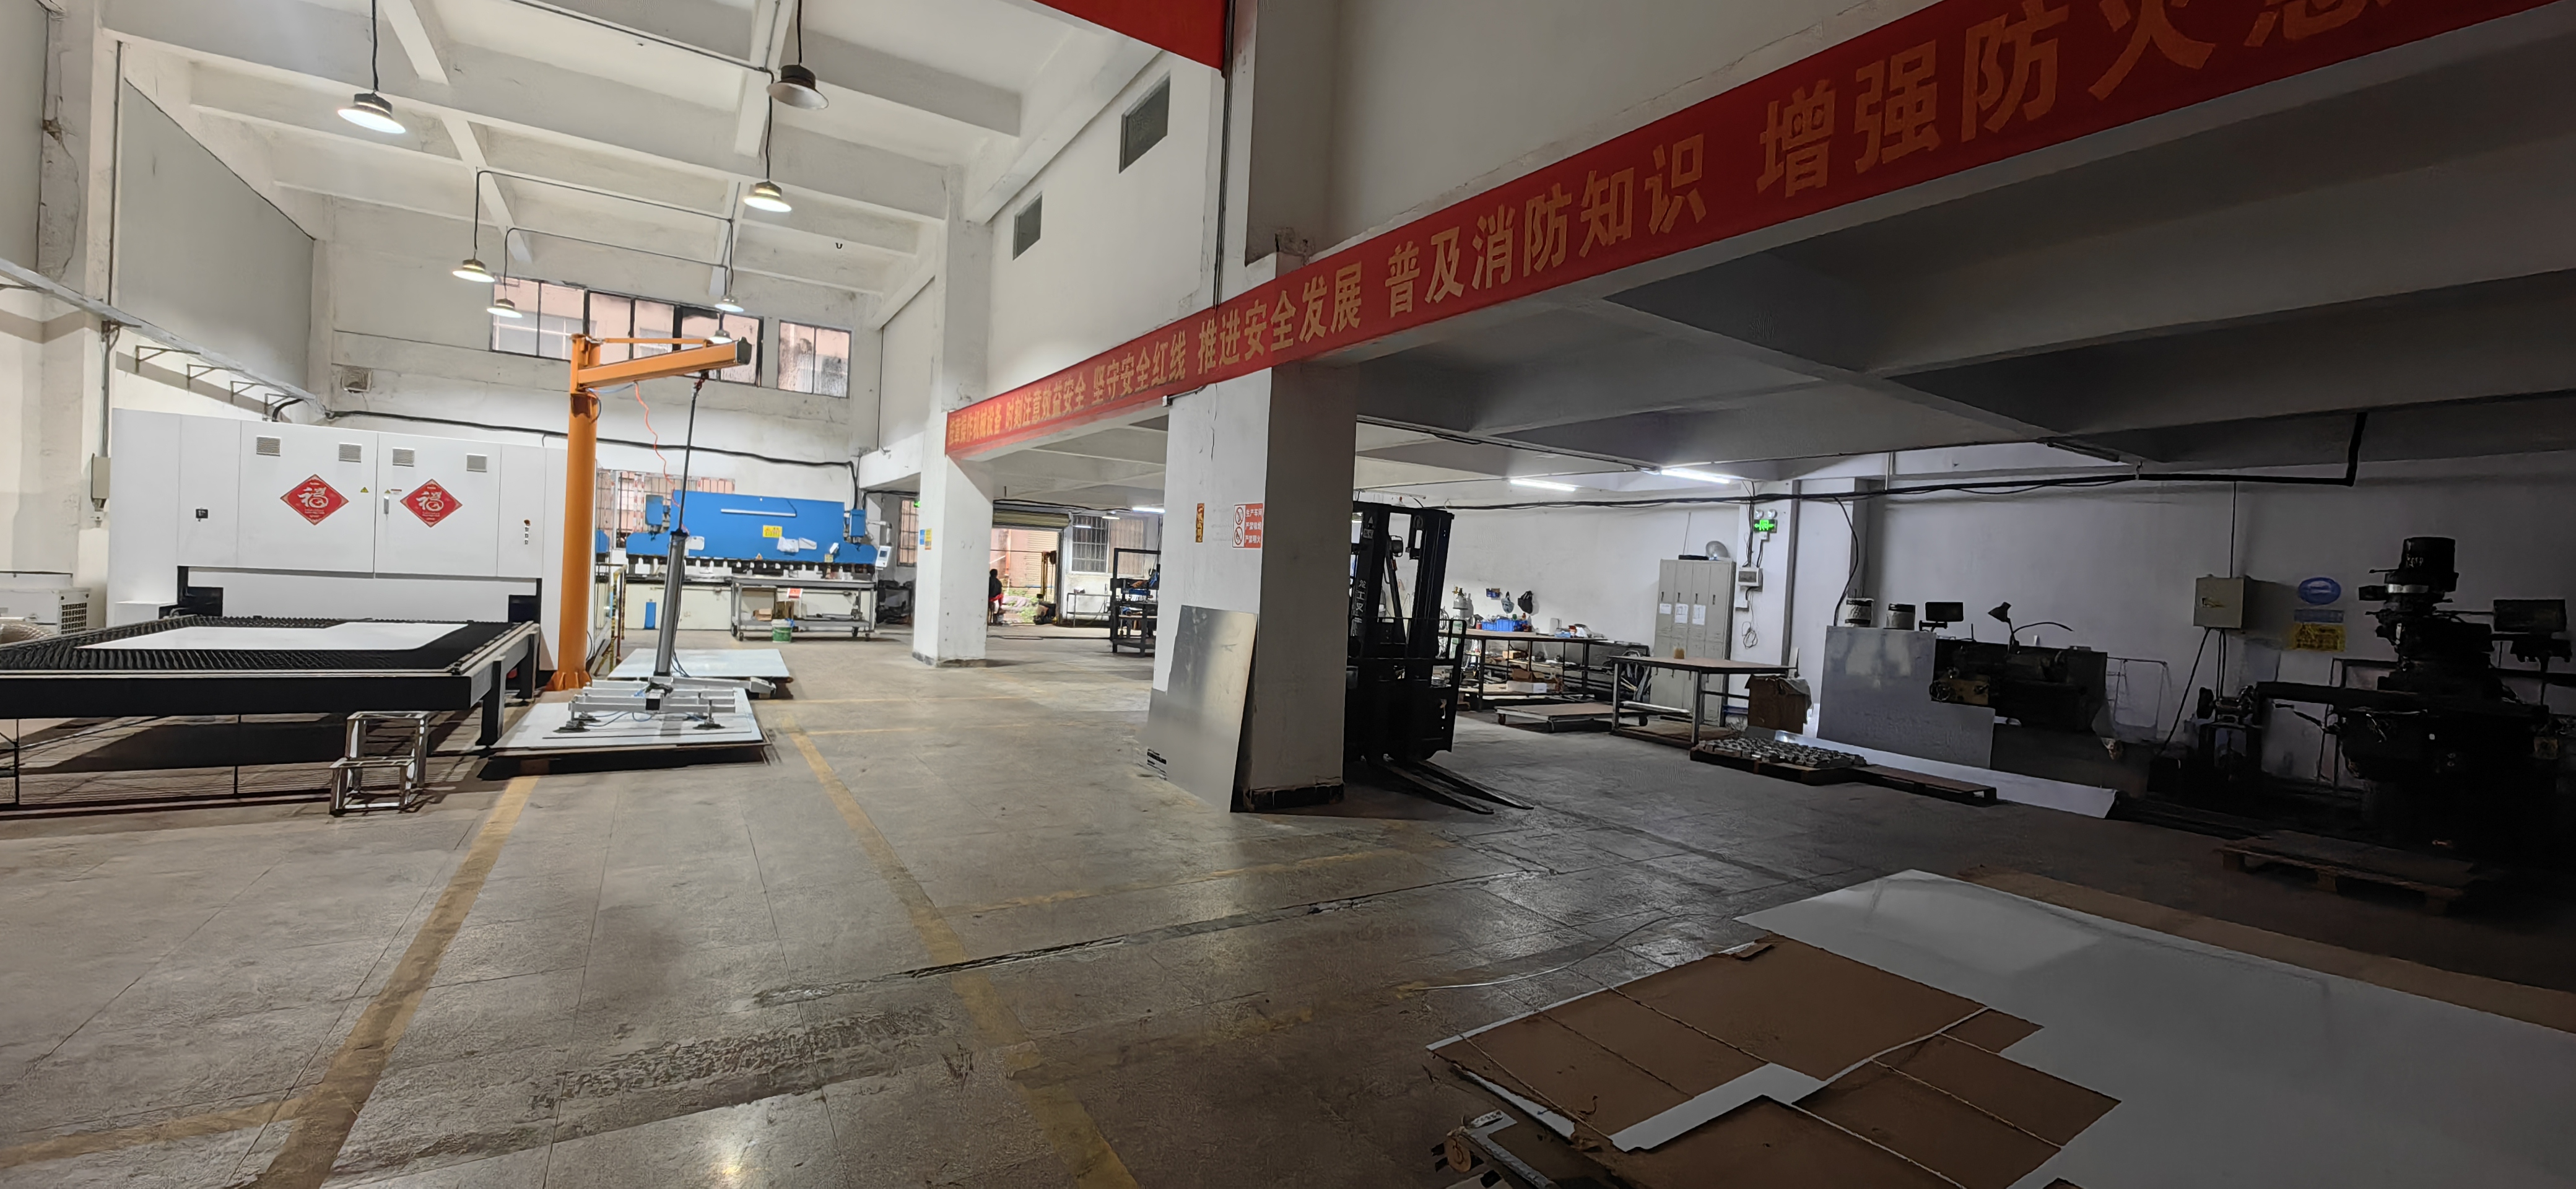 新塘镇夏埔工业区一楼厂房仓库1300平米